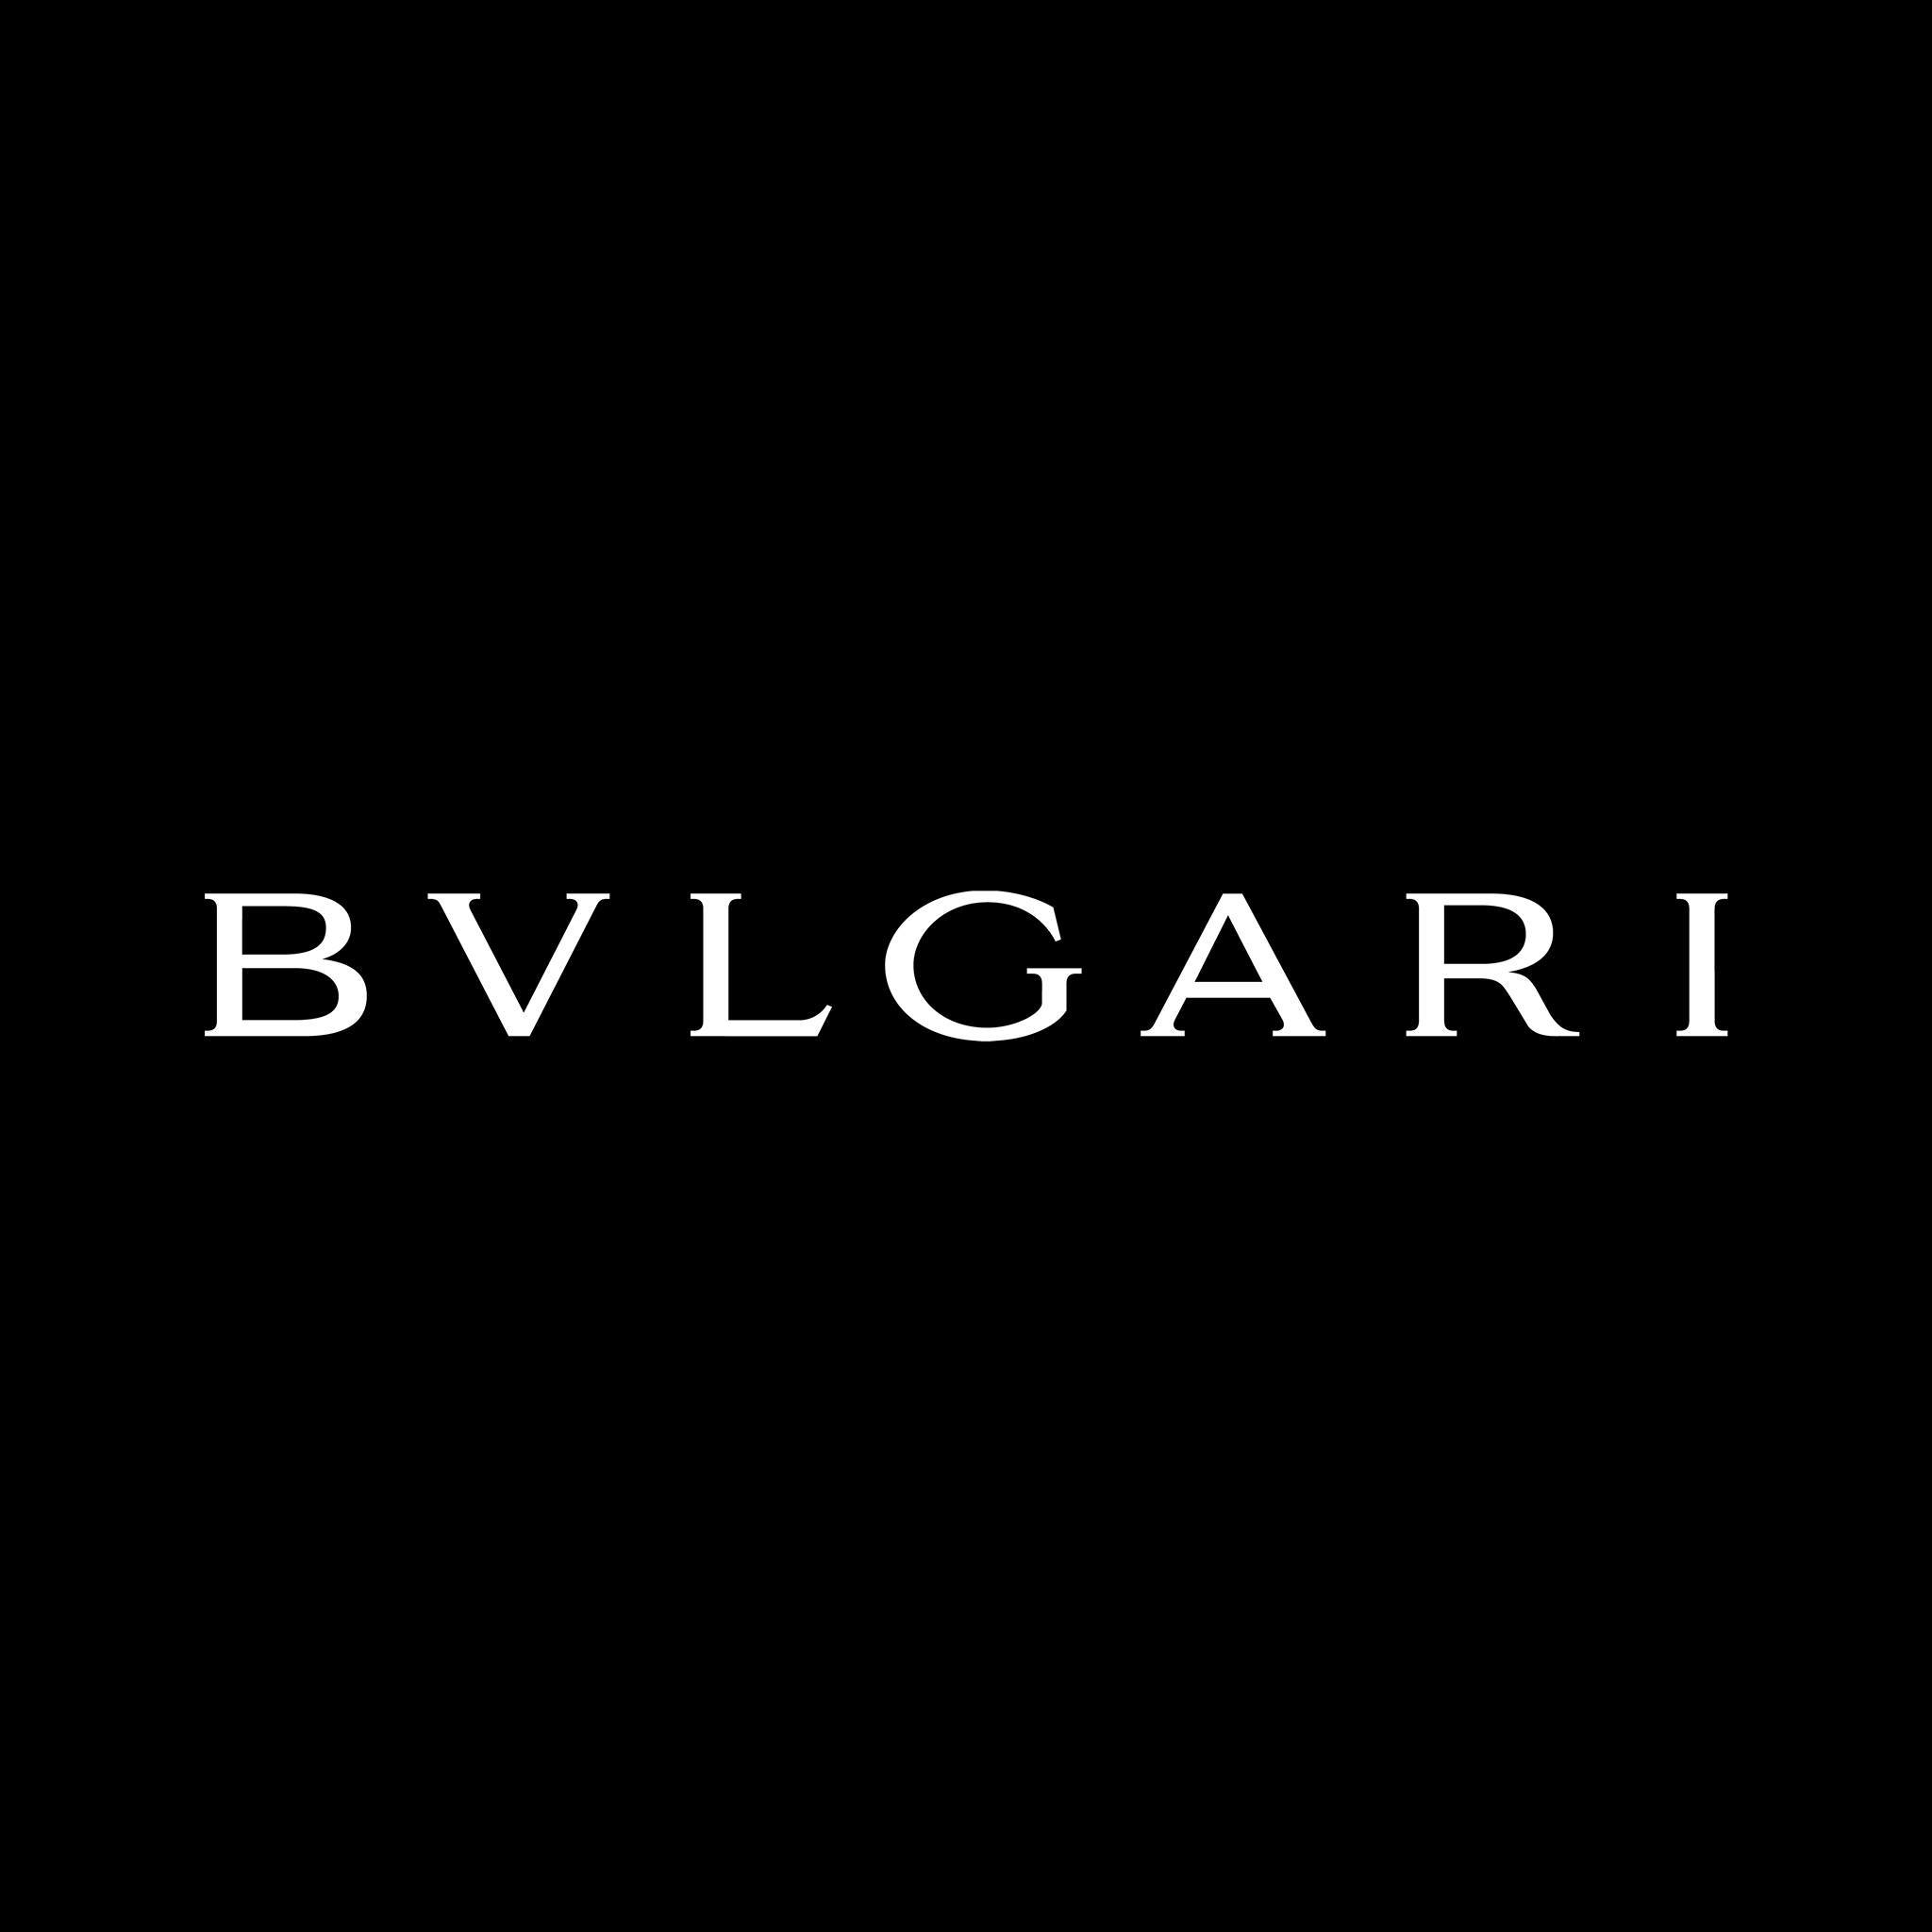 Bvlgari | HYPEBEAST